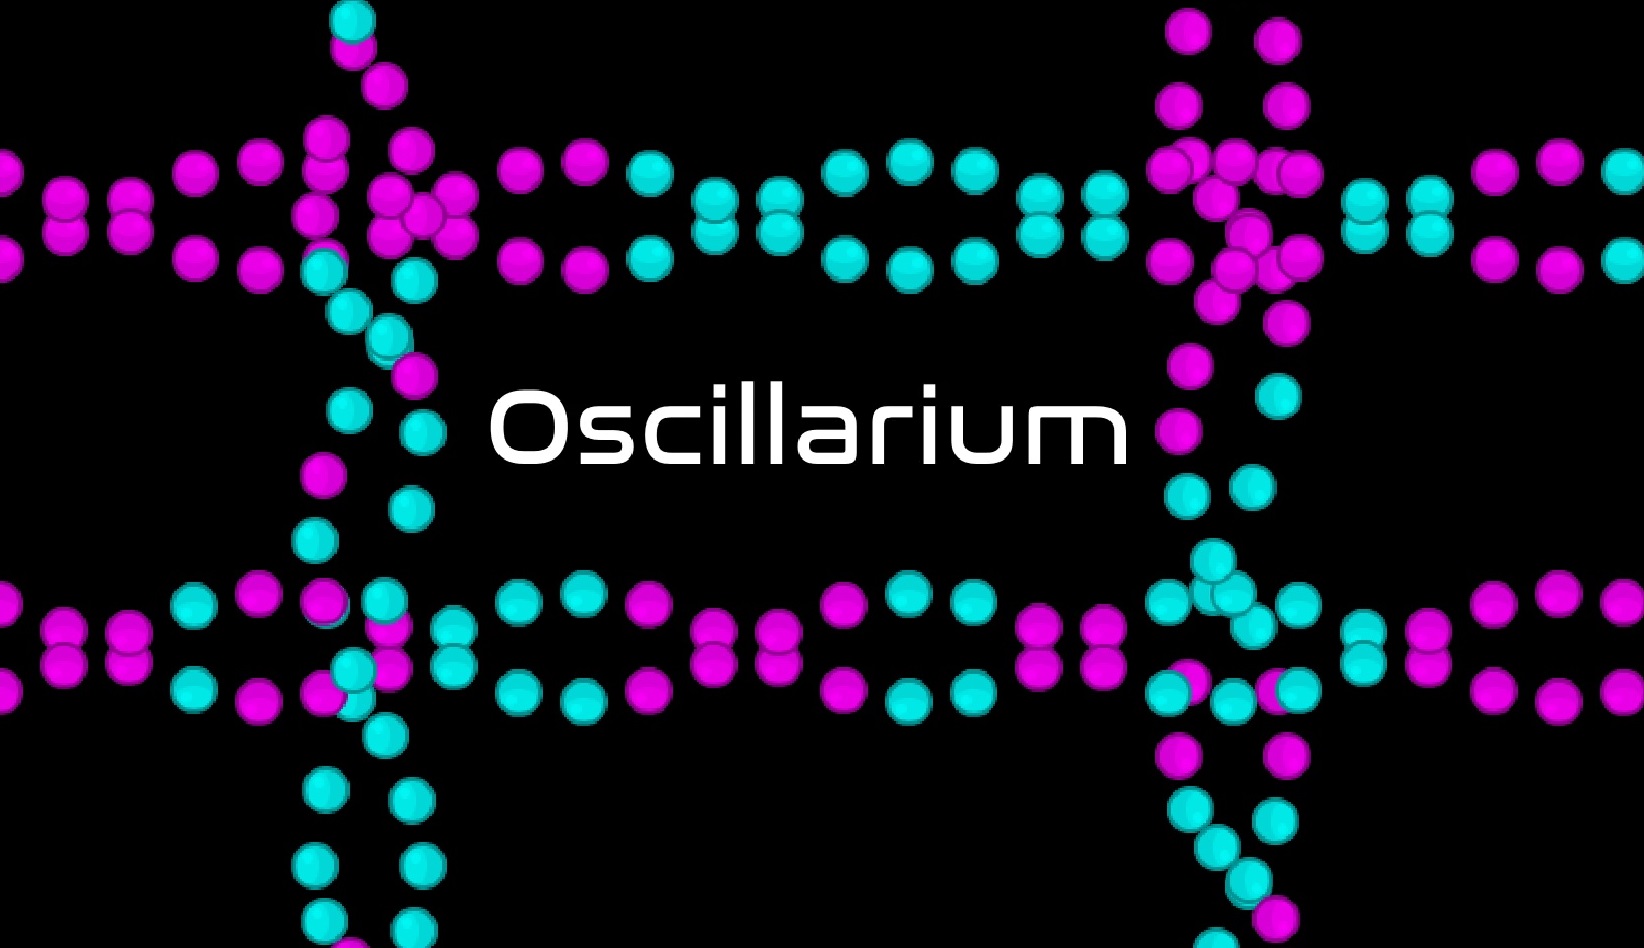 Oscillarium